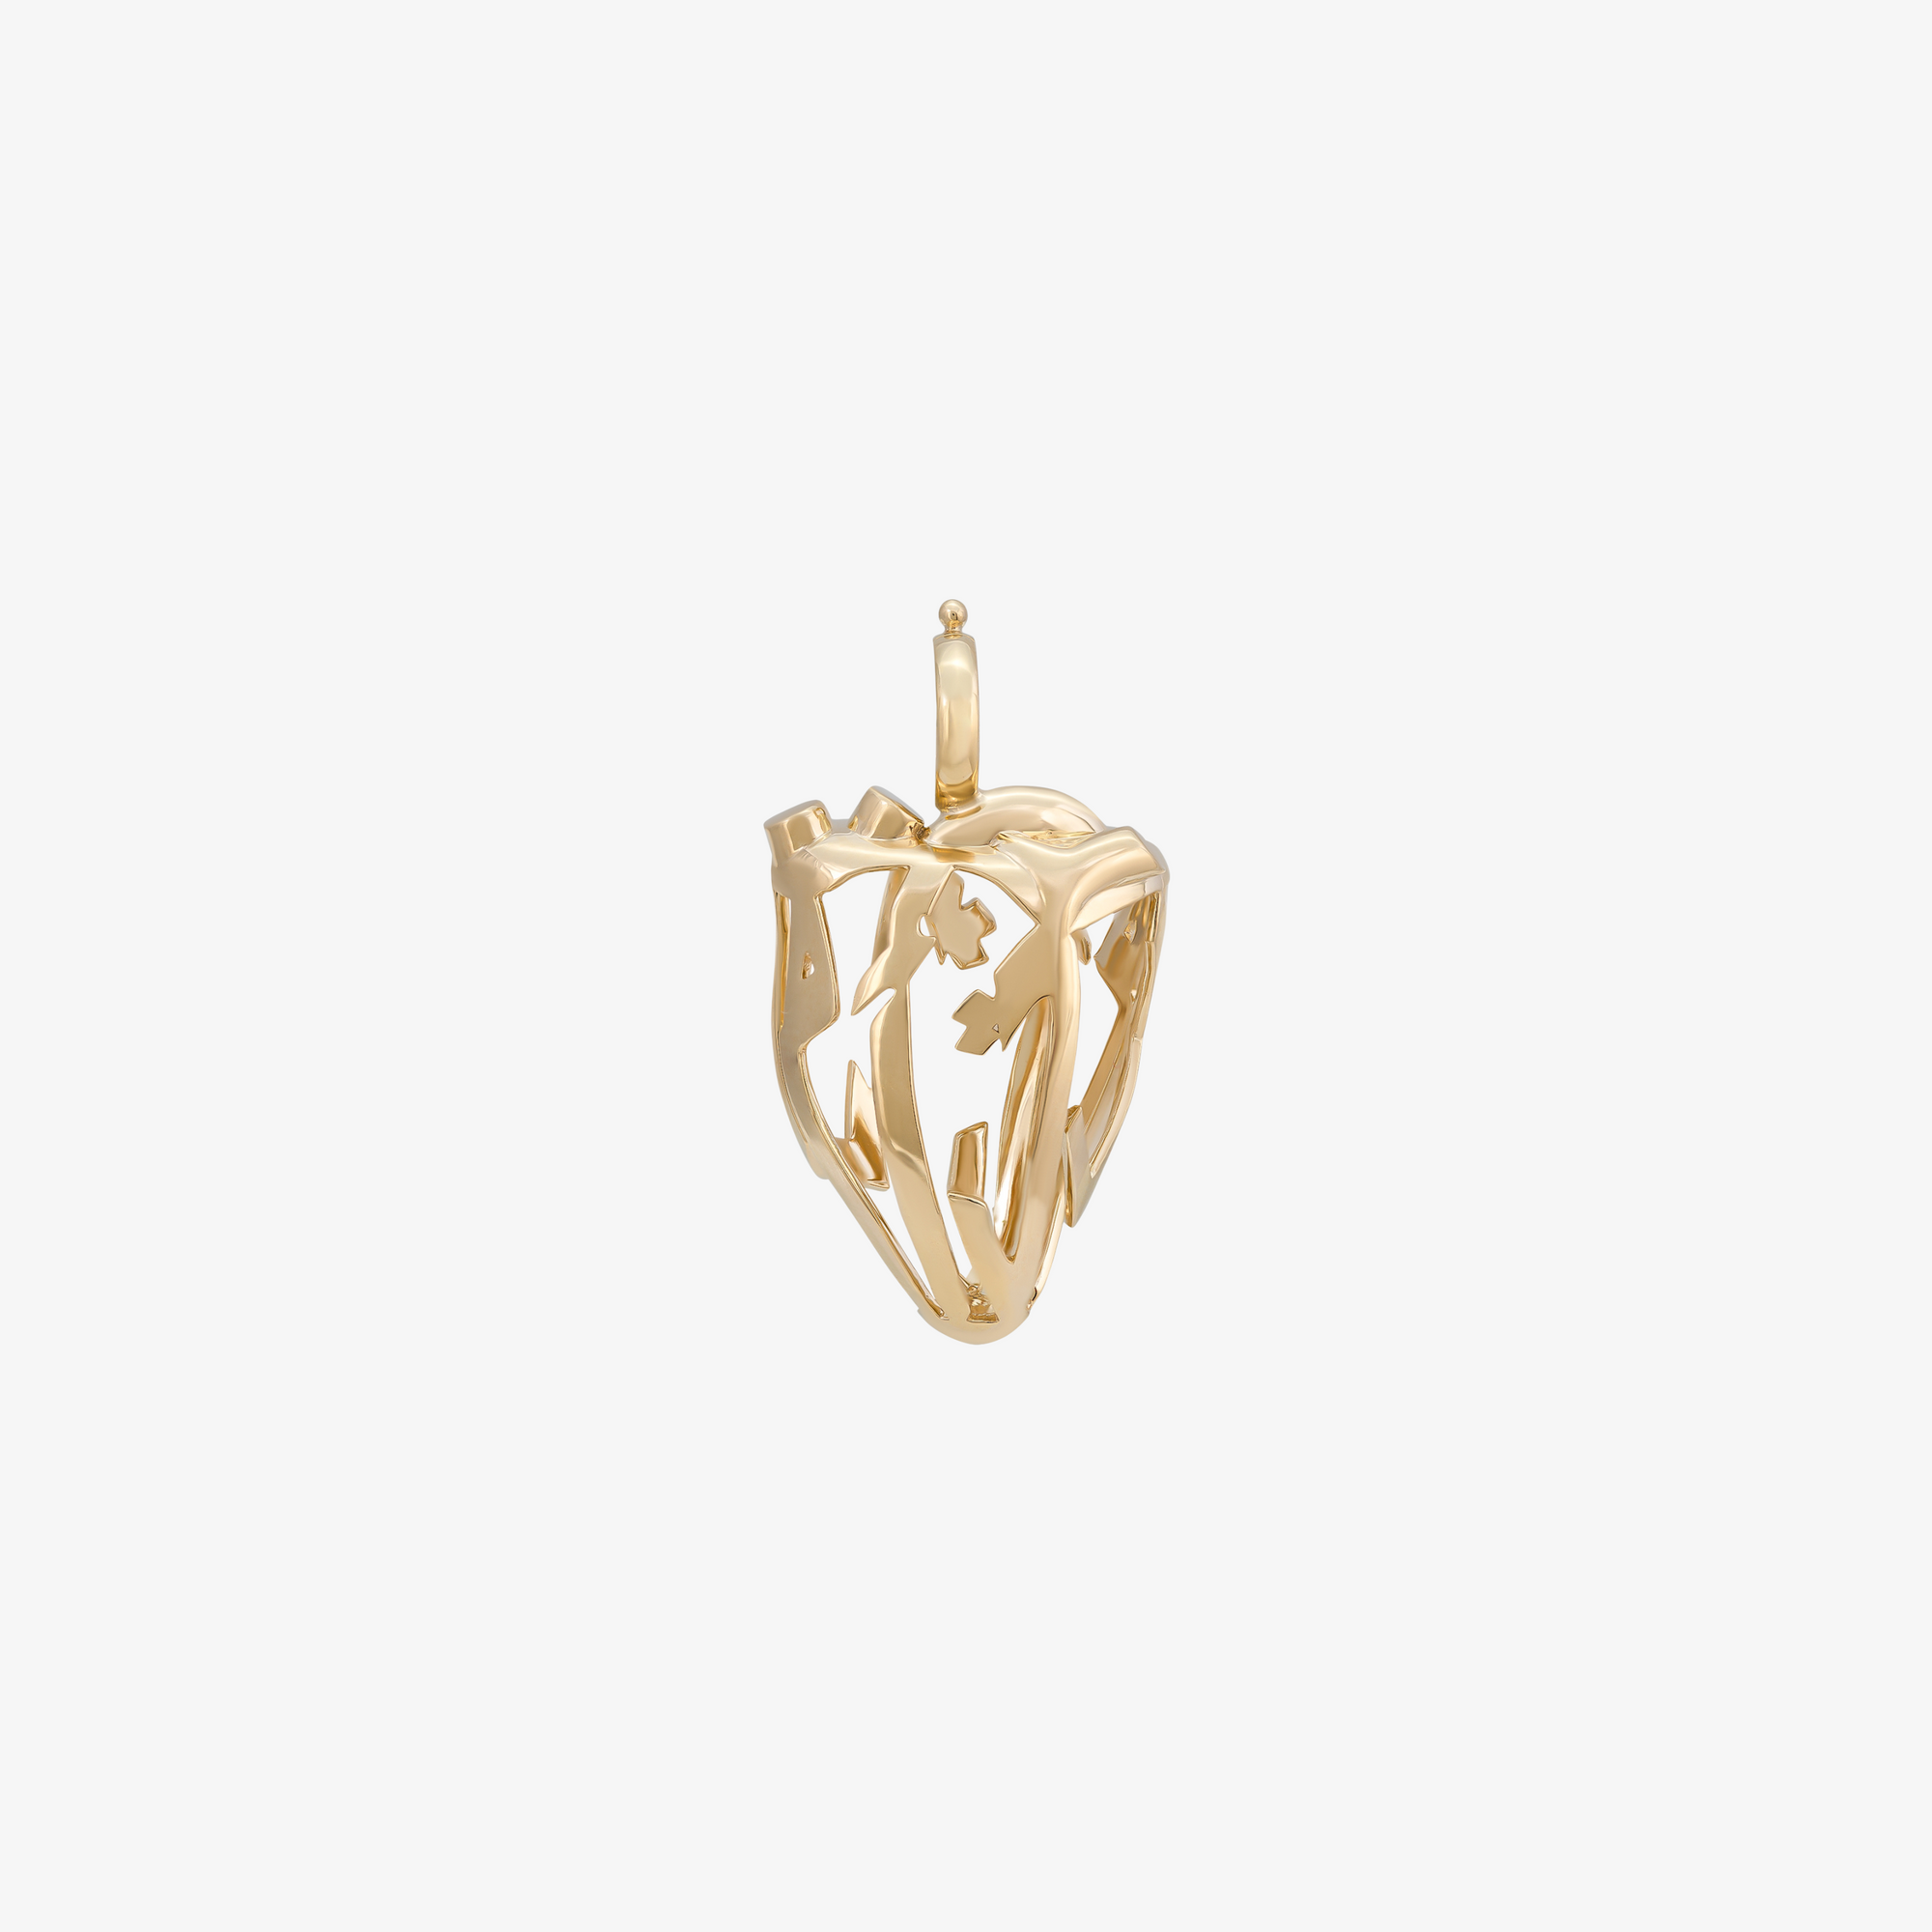 HOBB - 18K Gold Heart Shaped Pendant